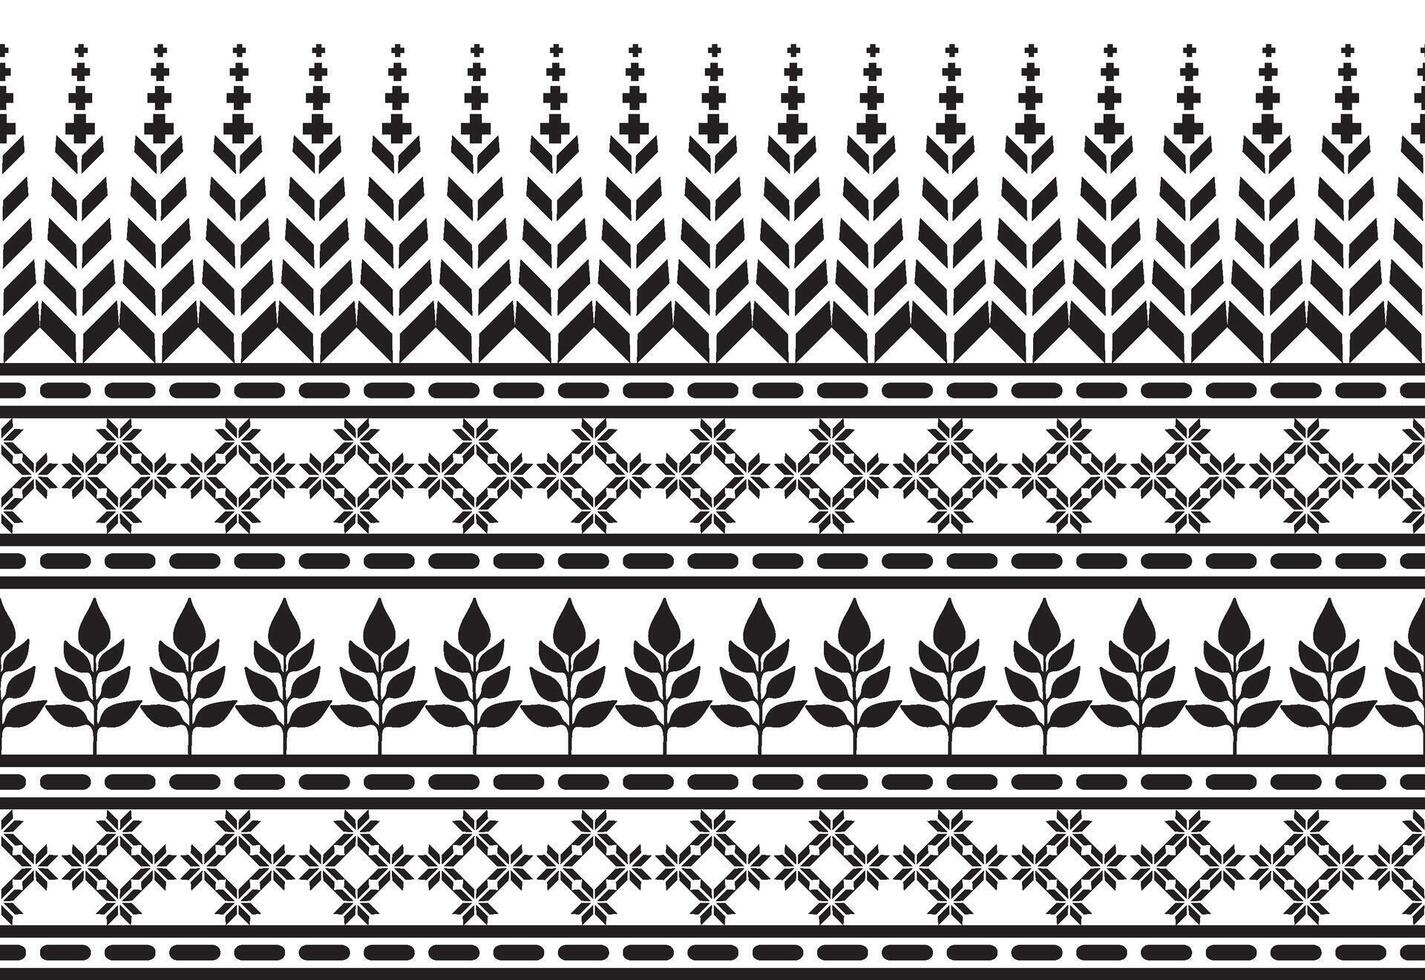 tribal traditioneel kleding stof batik etnisch. ikat bloemen naadloos patroon bladeren meetkundig herhalen ontwerp voor behang, inpakken, mode, tapijt, kleding. zwart en wit vector